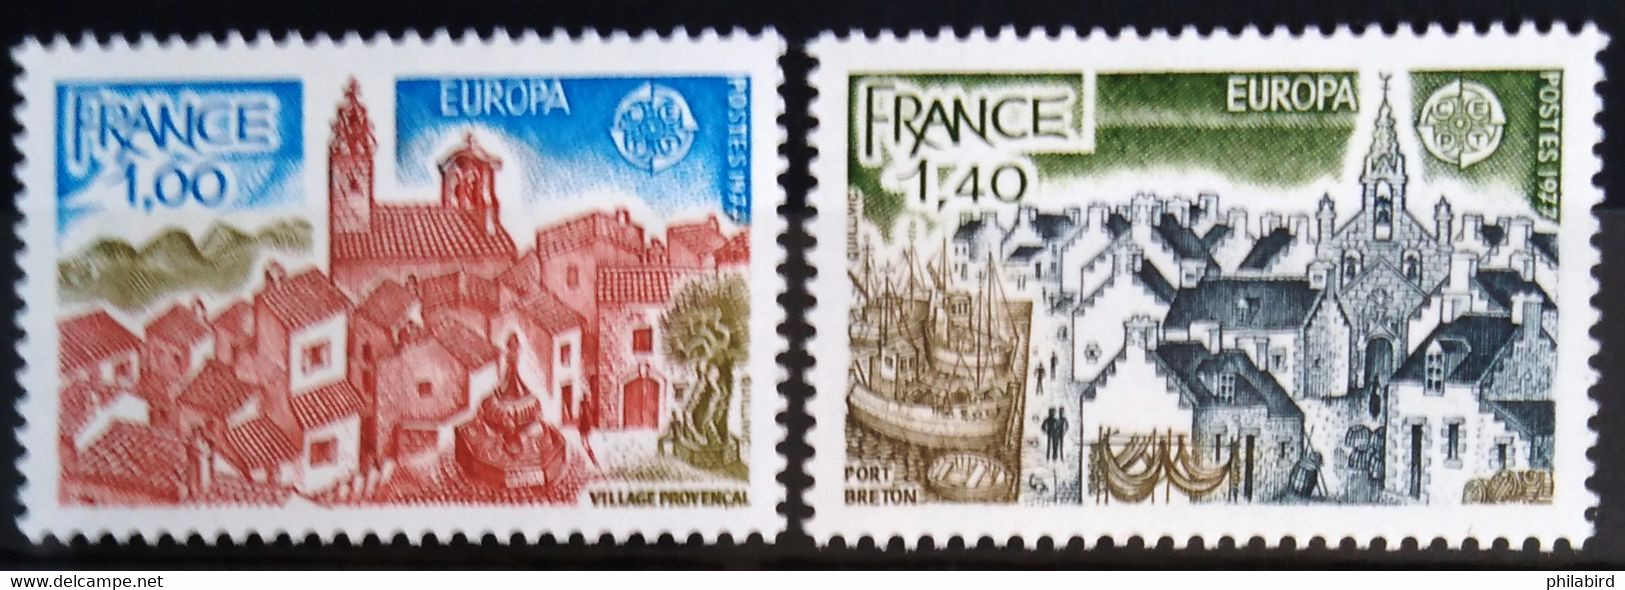 EUROPA 1977 - FRANCE                    N° 1928/1929                        NEUF** - 1977